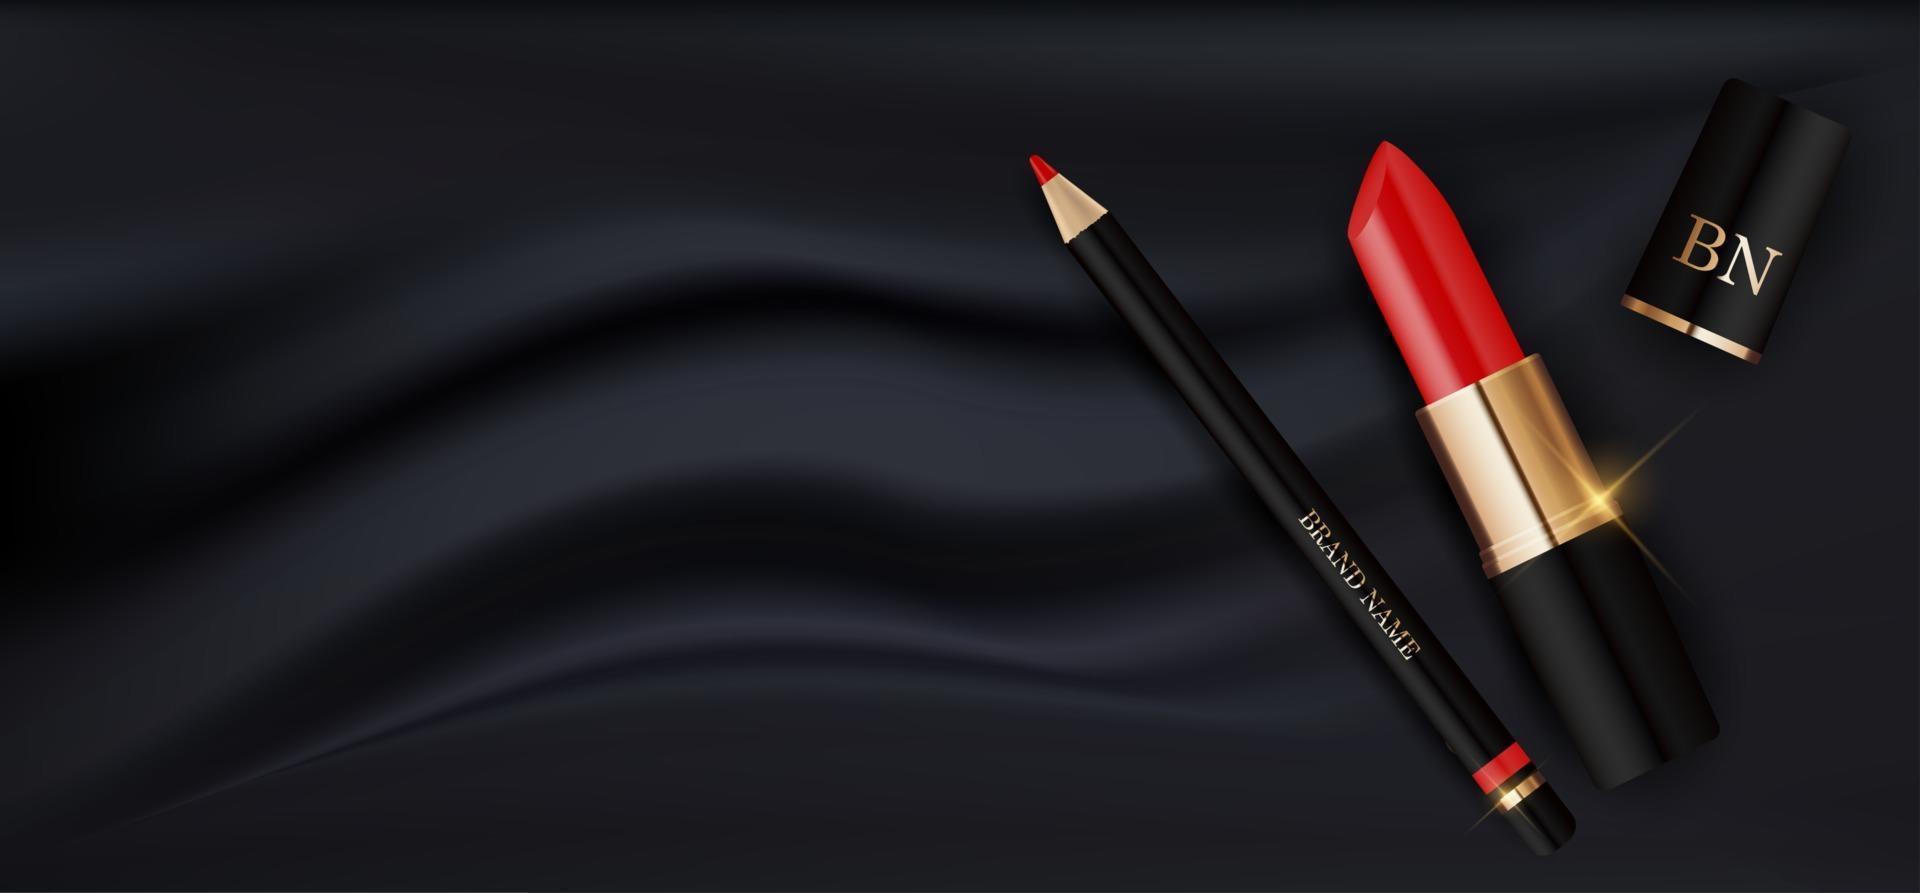 Batom vermelho realista 3D e lápis no modelo de design de seda preta de produtos cosméticos de moda para anúncios, panfleto, banner ou fundo de revista. ilustração vetorial vetor